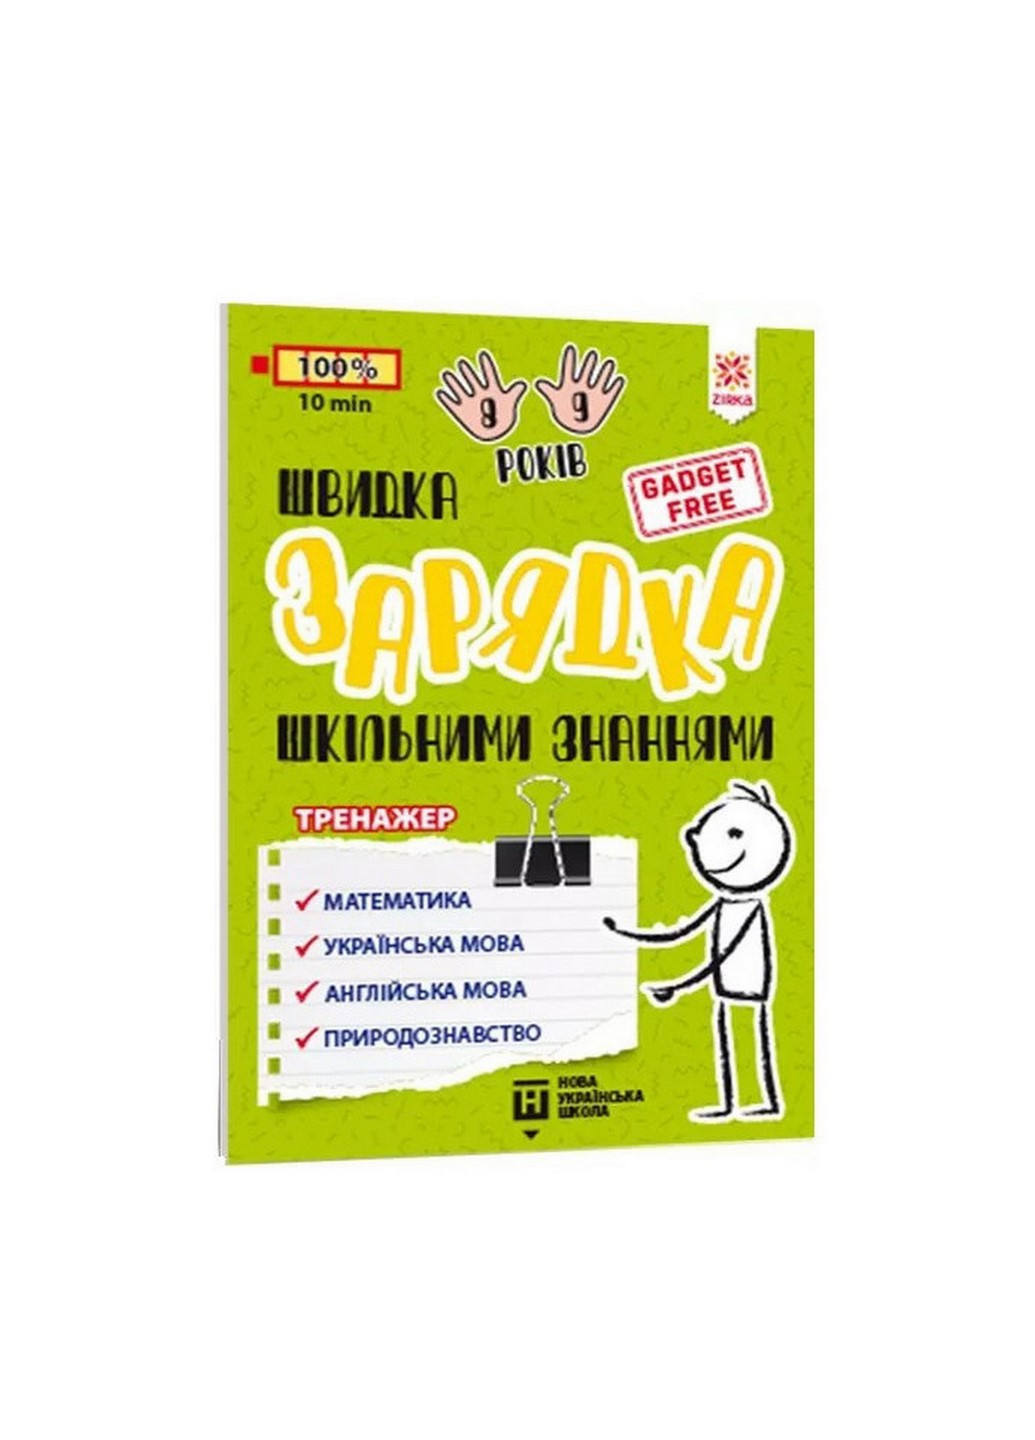 Навчальна книга Швидка зарядка шкільними знаннями 8-9 років 137466 Zirka (260515776)